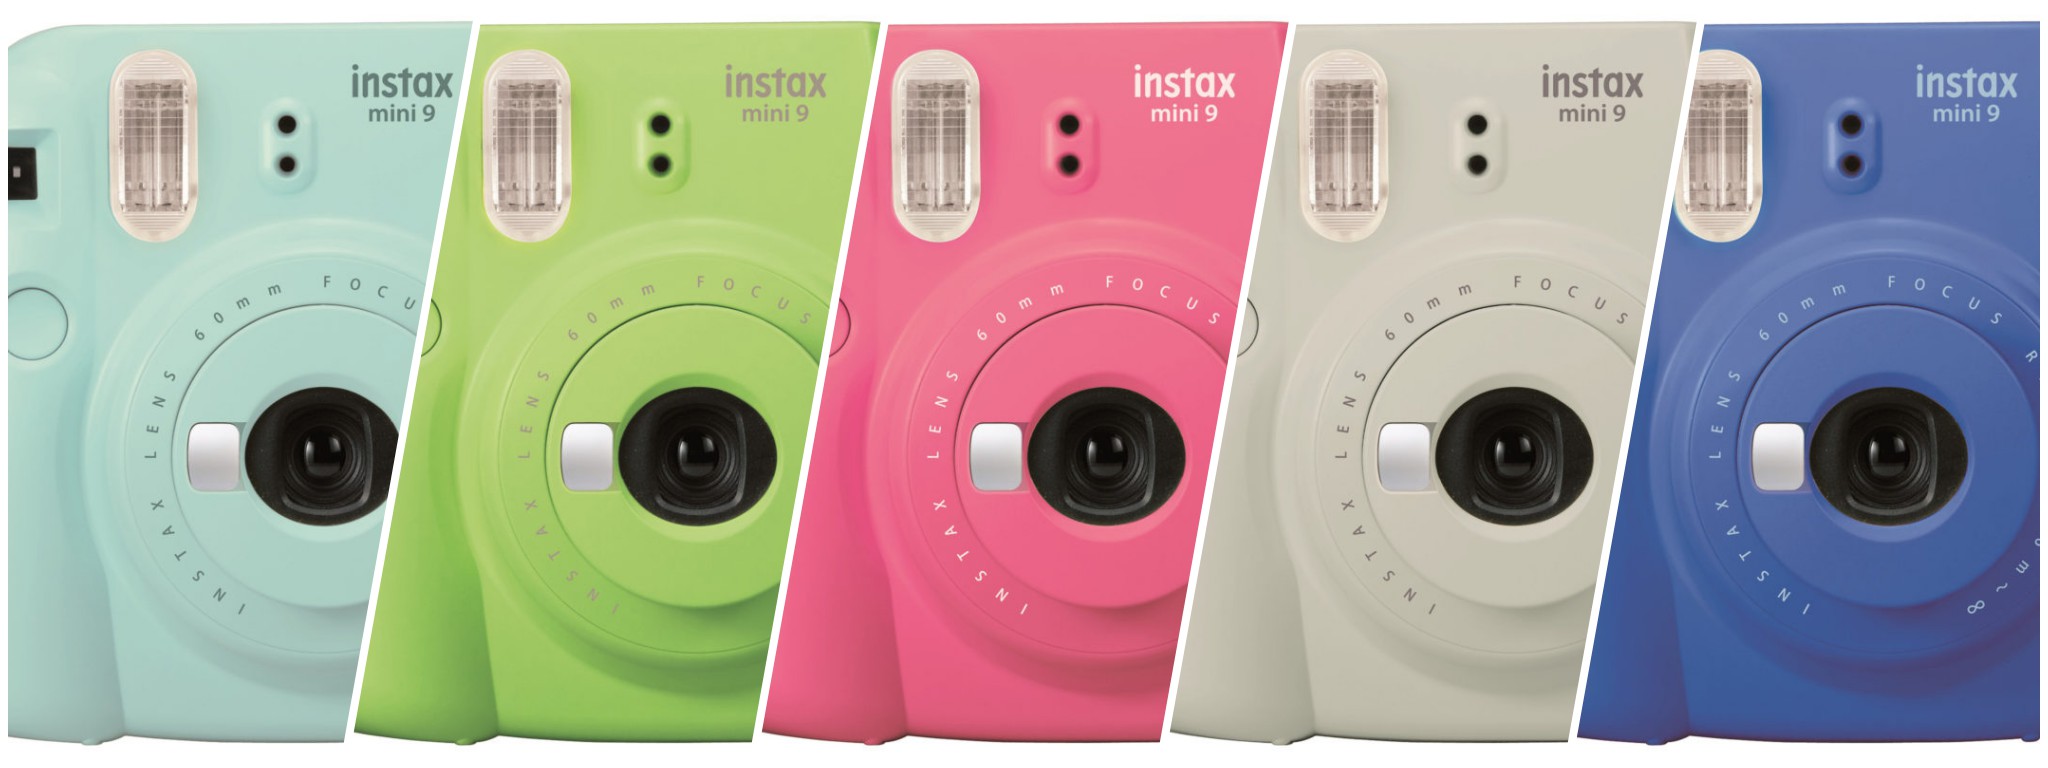 Fujifilm ra mắt Instax mini 9: Máy chụp ảnh lấy liền, có 5 màu vui vẻ, giá 69,95 USD